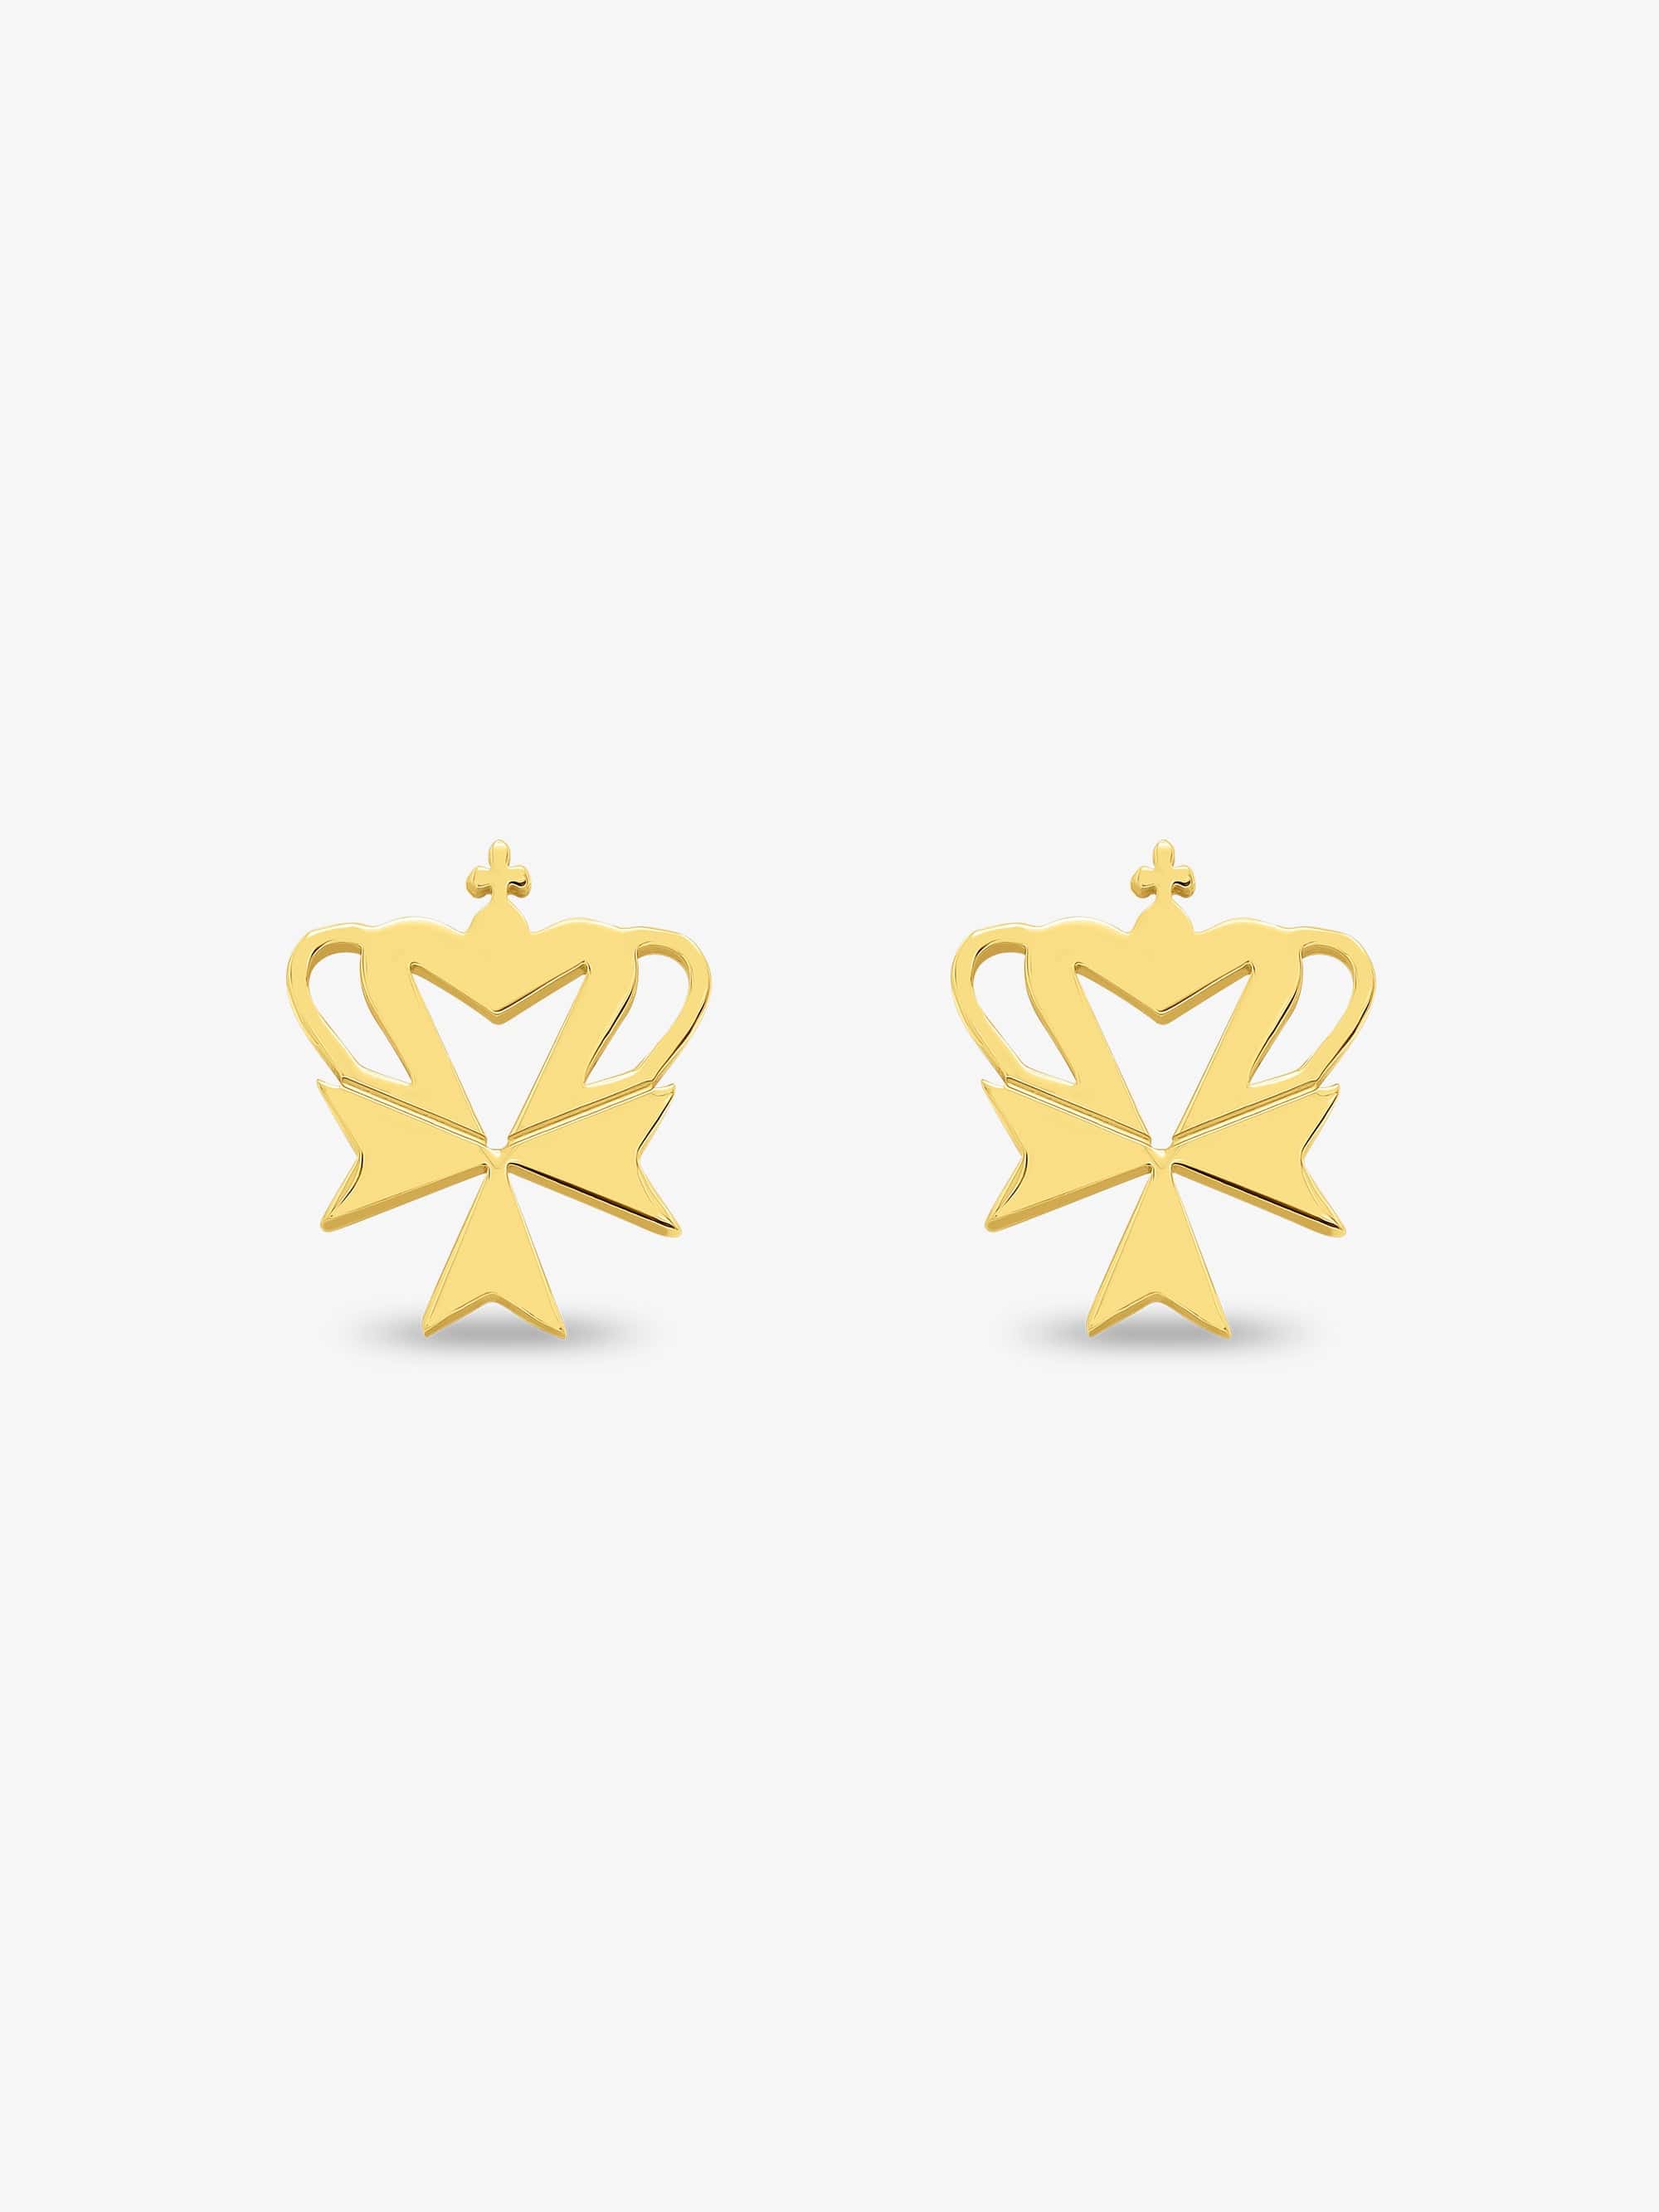 Sultana-Malta EARRINGS Crown Cross Stud Earrings